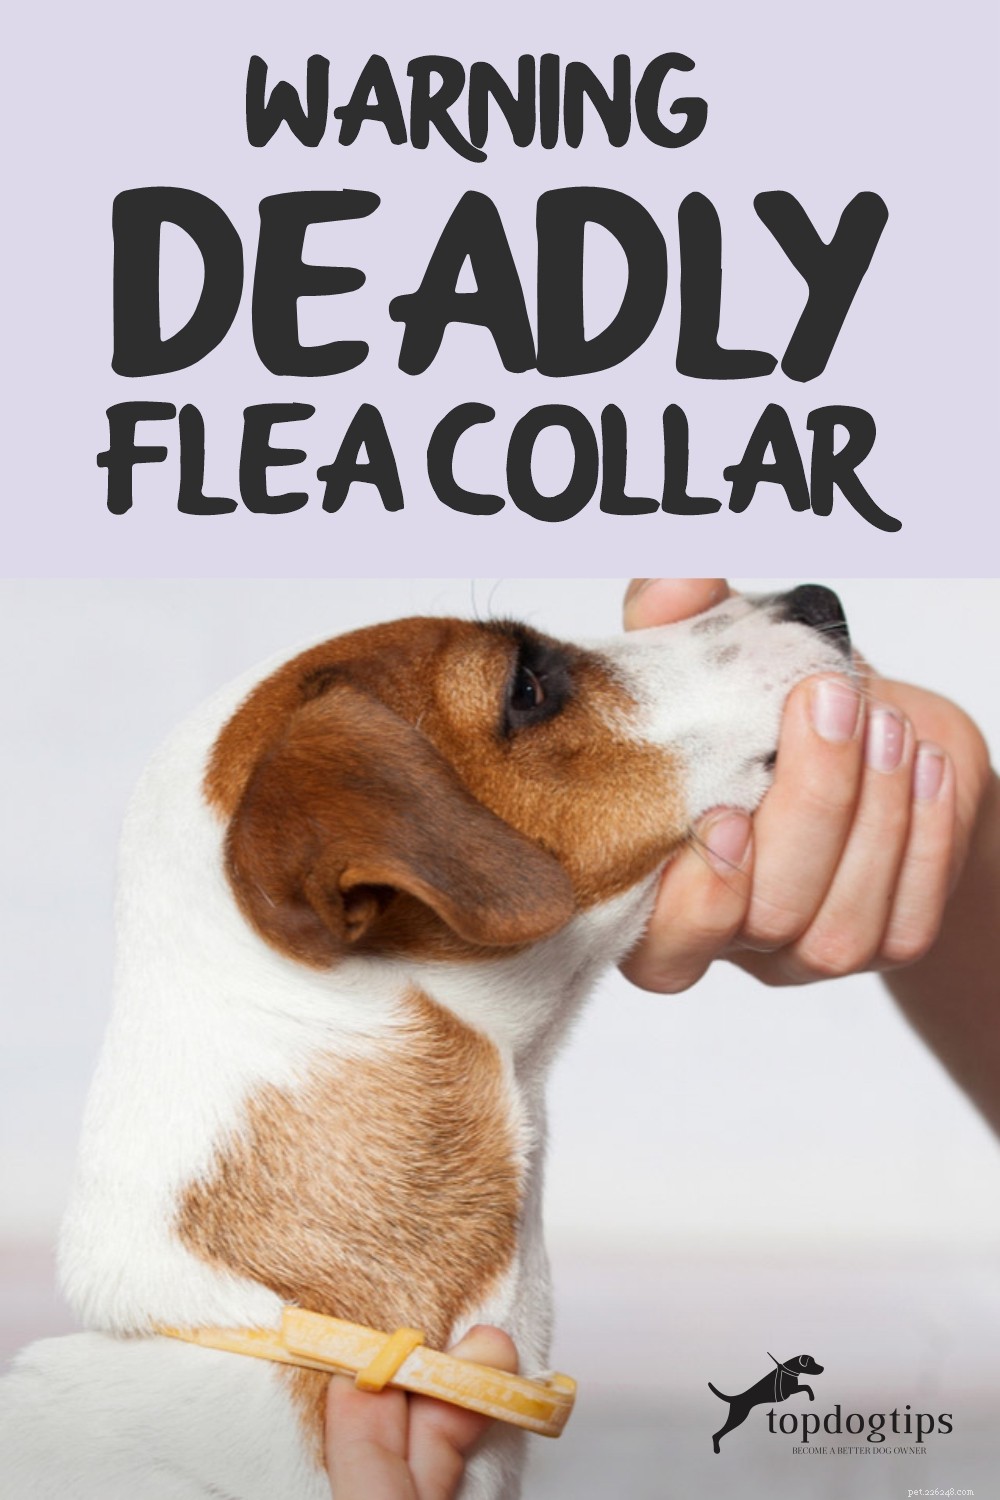 VARNING! Deadly Flea Collar